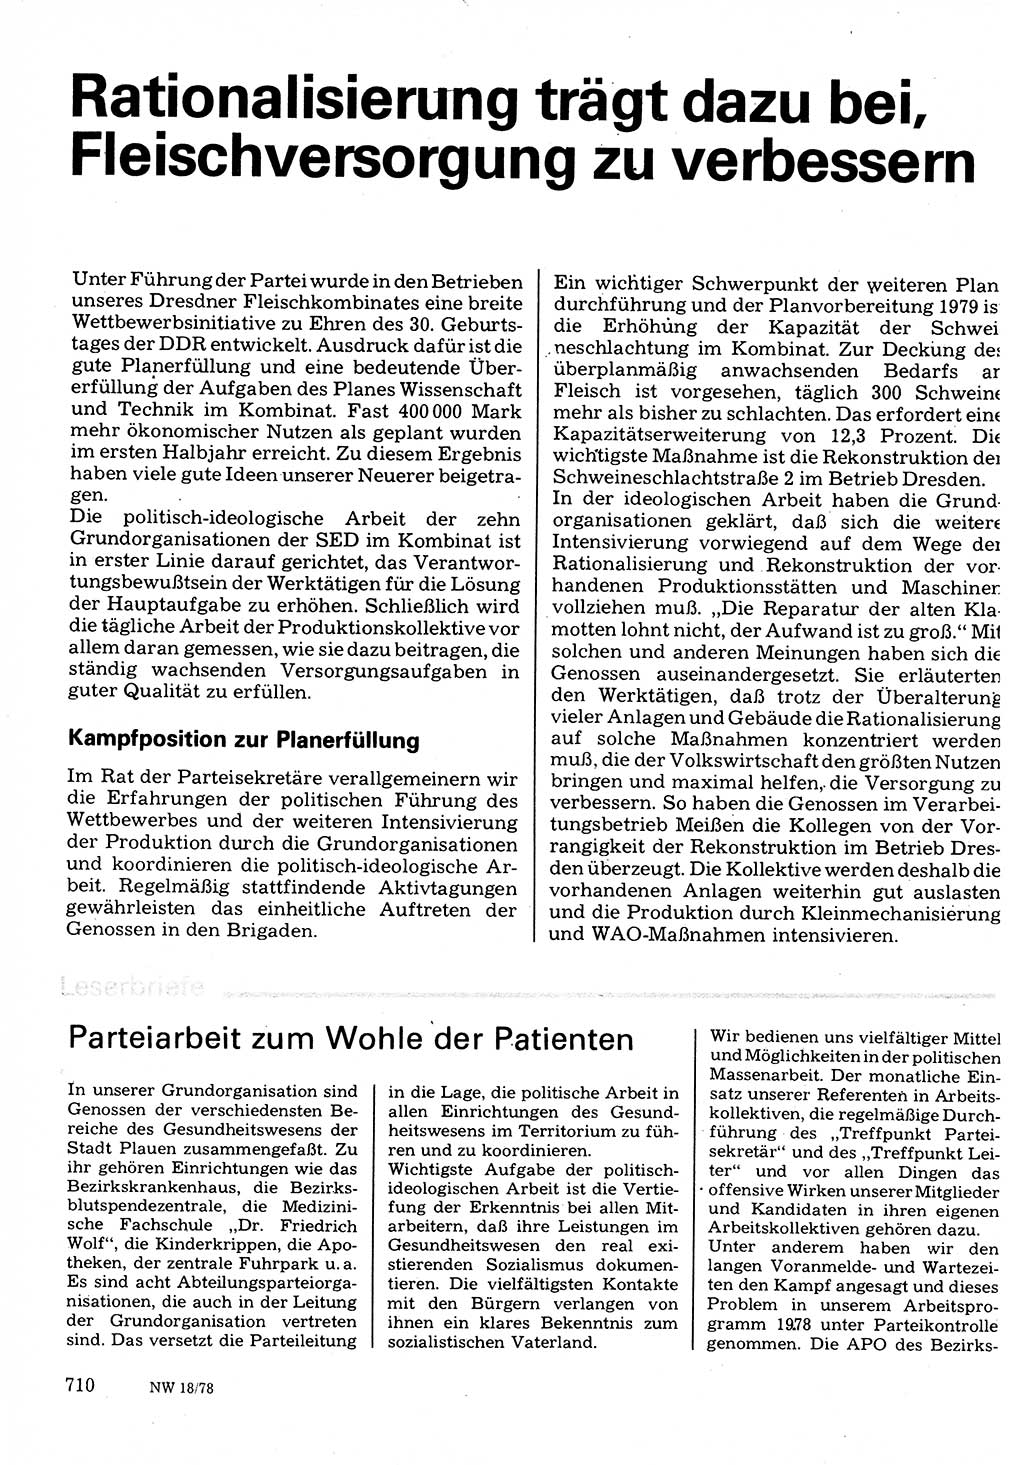 Neuer Weg (NW), Organ des Zentralkomitees (ZK) der SED (Sozialistische Einheitspartei Deutschlands) für Fragen des Parteilebens, 33. Jahrgang [Deutsche Demokratische Republik (DDR)] 1978, Seite 710 (NW ZK SED DDR 1978, S. 710)